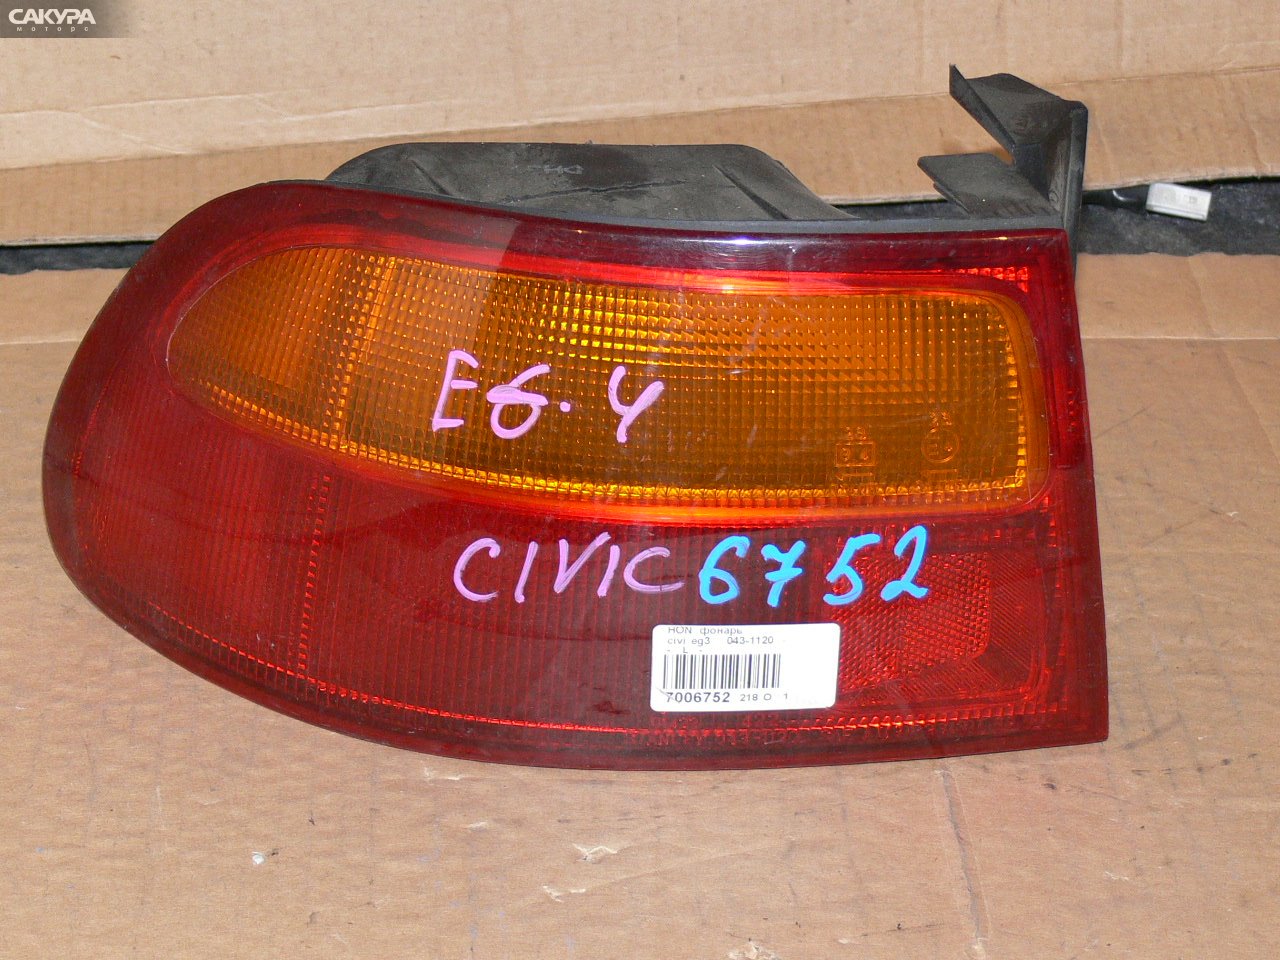 Фонарь стоп-сигнала левый Honda Civic EG3 043-1120: купить в Сакура Иркутск.